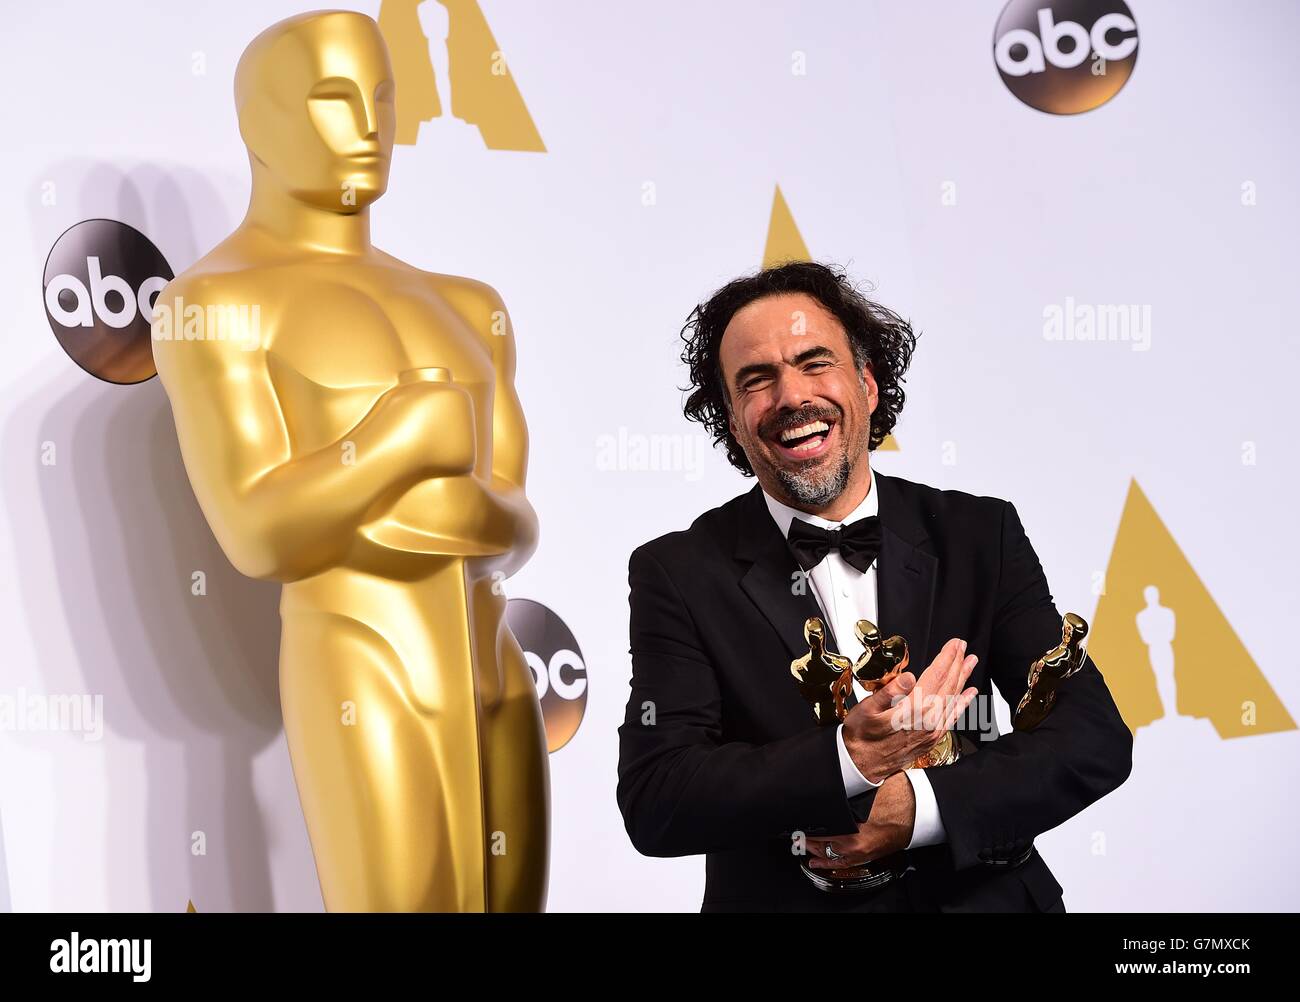 Alejandro G. Inarritu accepte le prix du meilleur réalisateur pour 'Birdman ou (la vertu inattendue de l'ignorance)', dans la salle de presse des 87e Academy Awards qui se tiennent au Dolby Theatre à Hollywood, Los Angeles, CA, USA, le 22 février, 2015. Banque D'Images